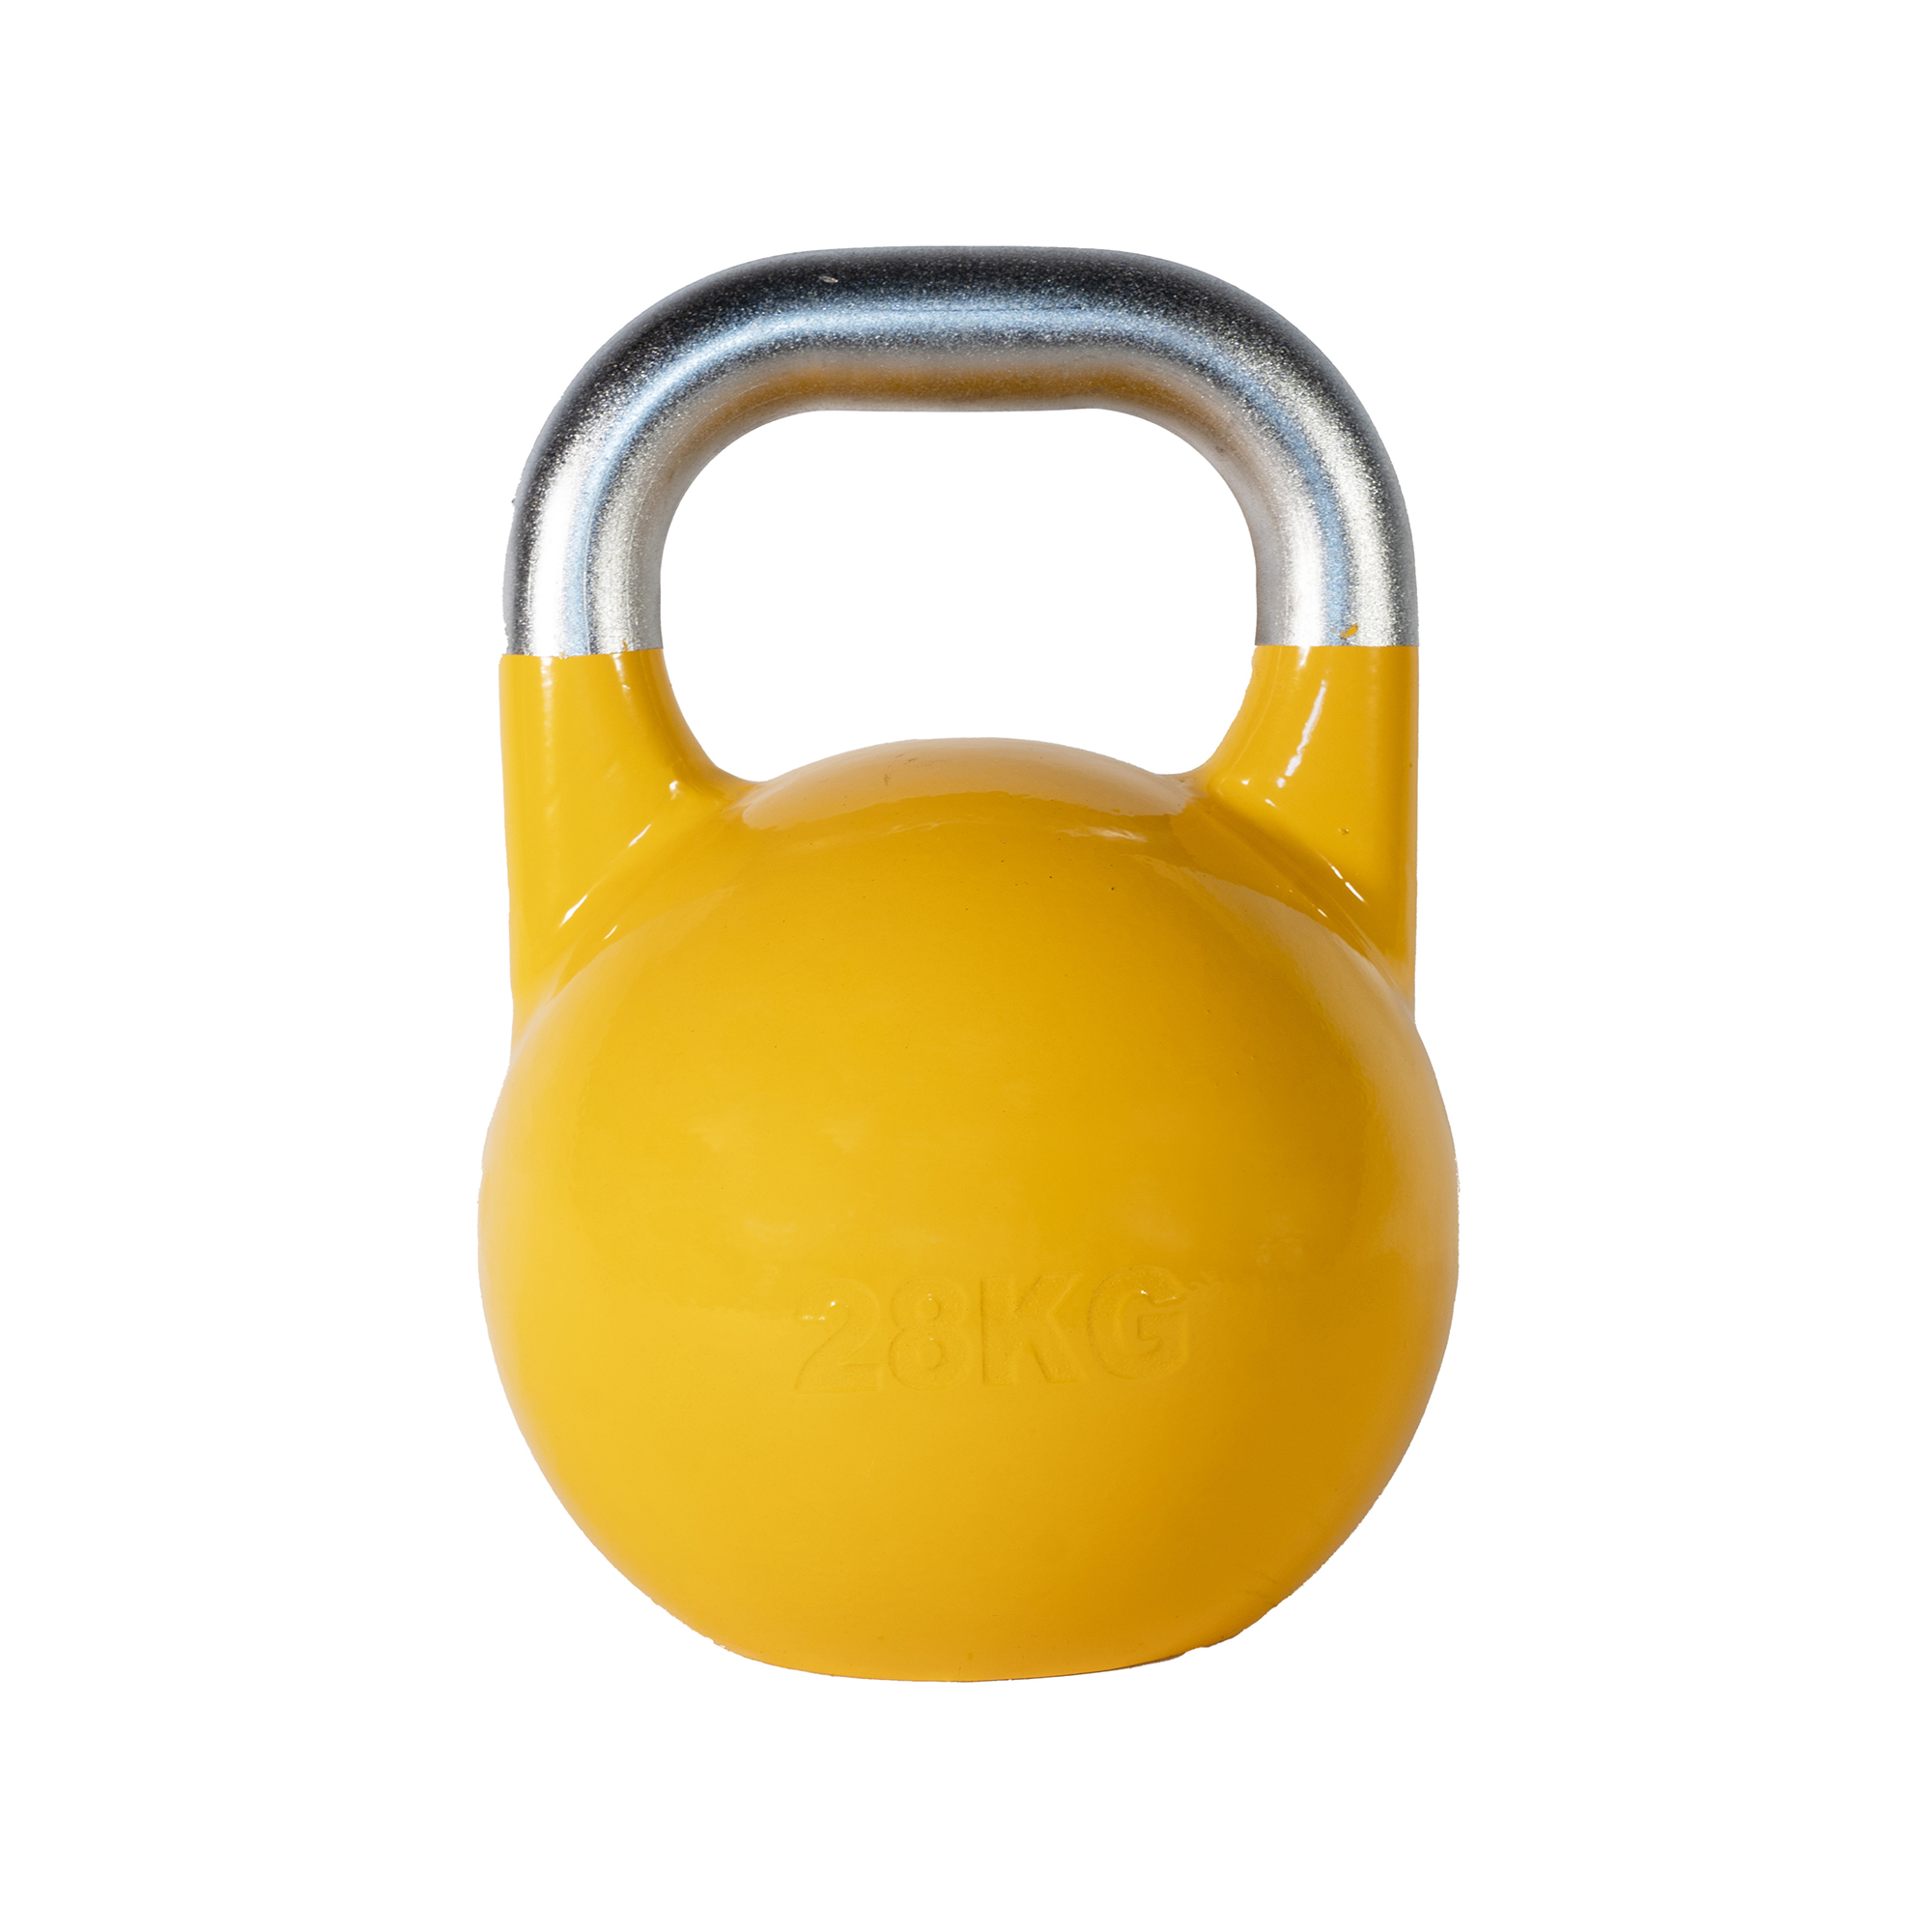 SQ&SN Competition Kettlebell (28 kg) i støbejern. Udstyr til crossfit træning, styrketræning og funktionel træning